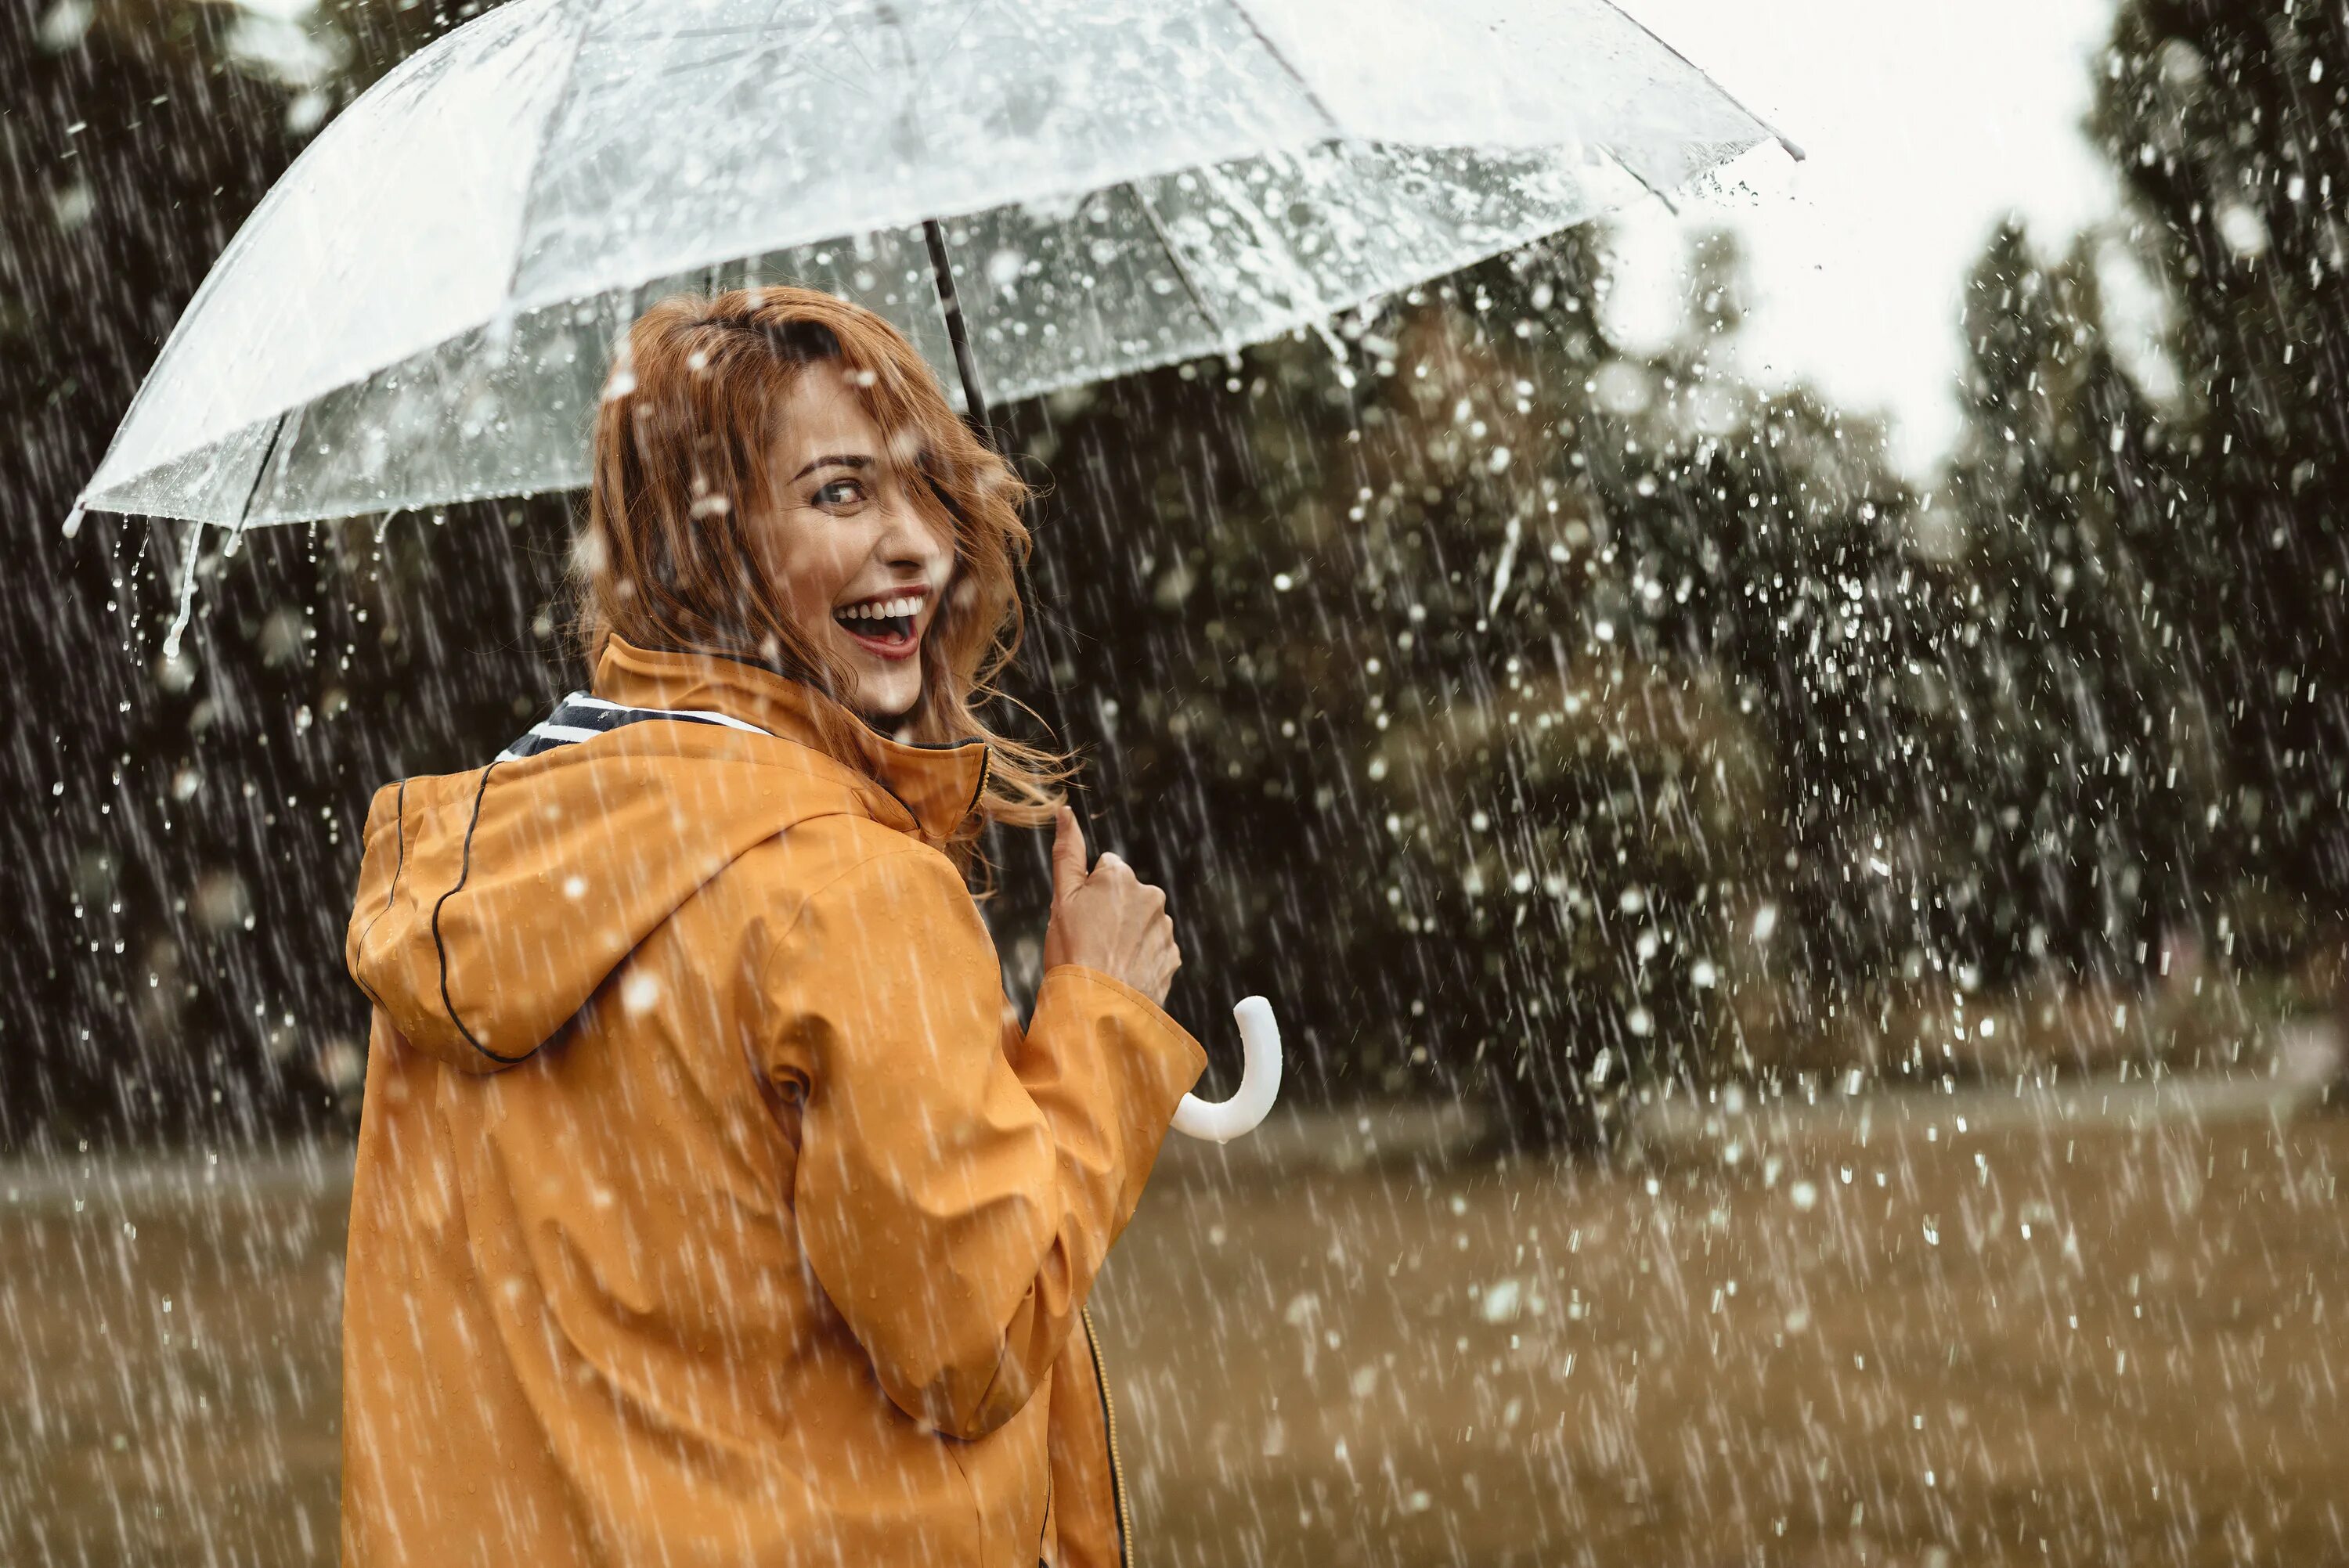 Под дождем. Женщина под дождем. Фотосессия в дождь. Дождь радость. It s raining heavily